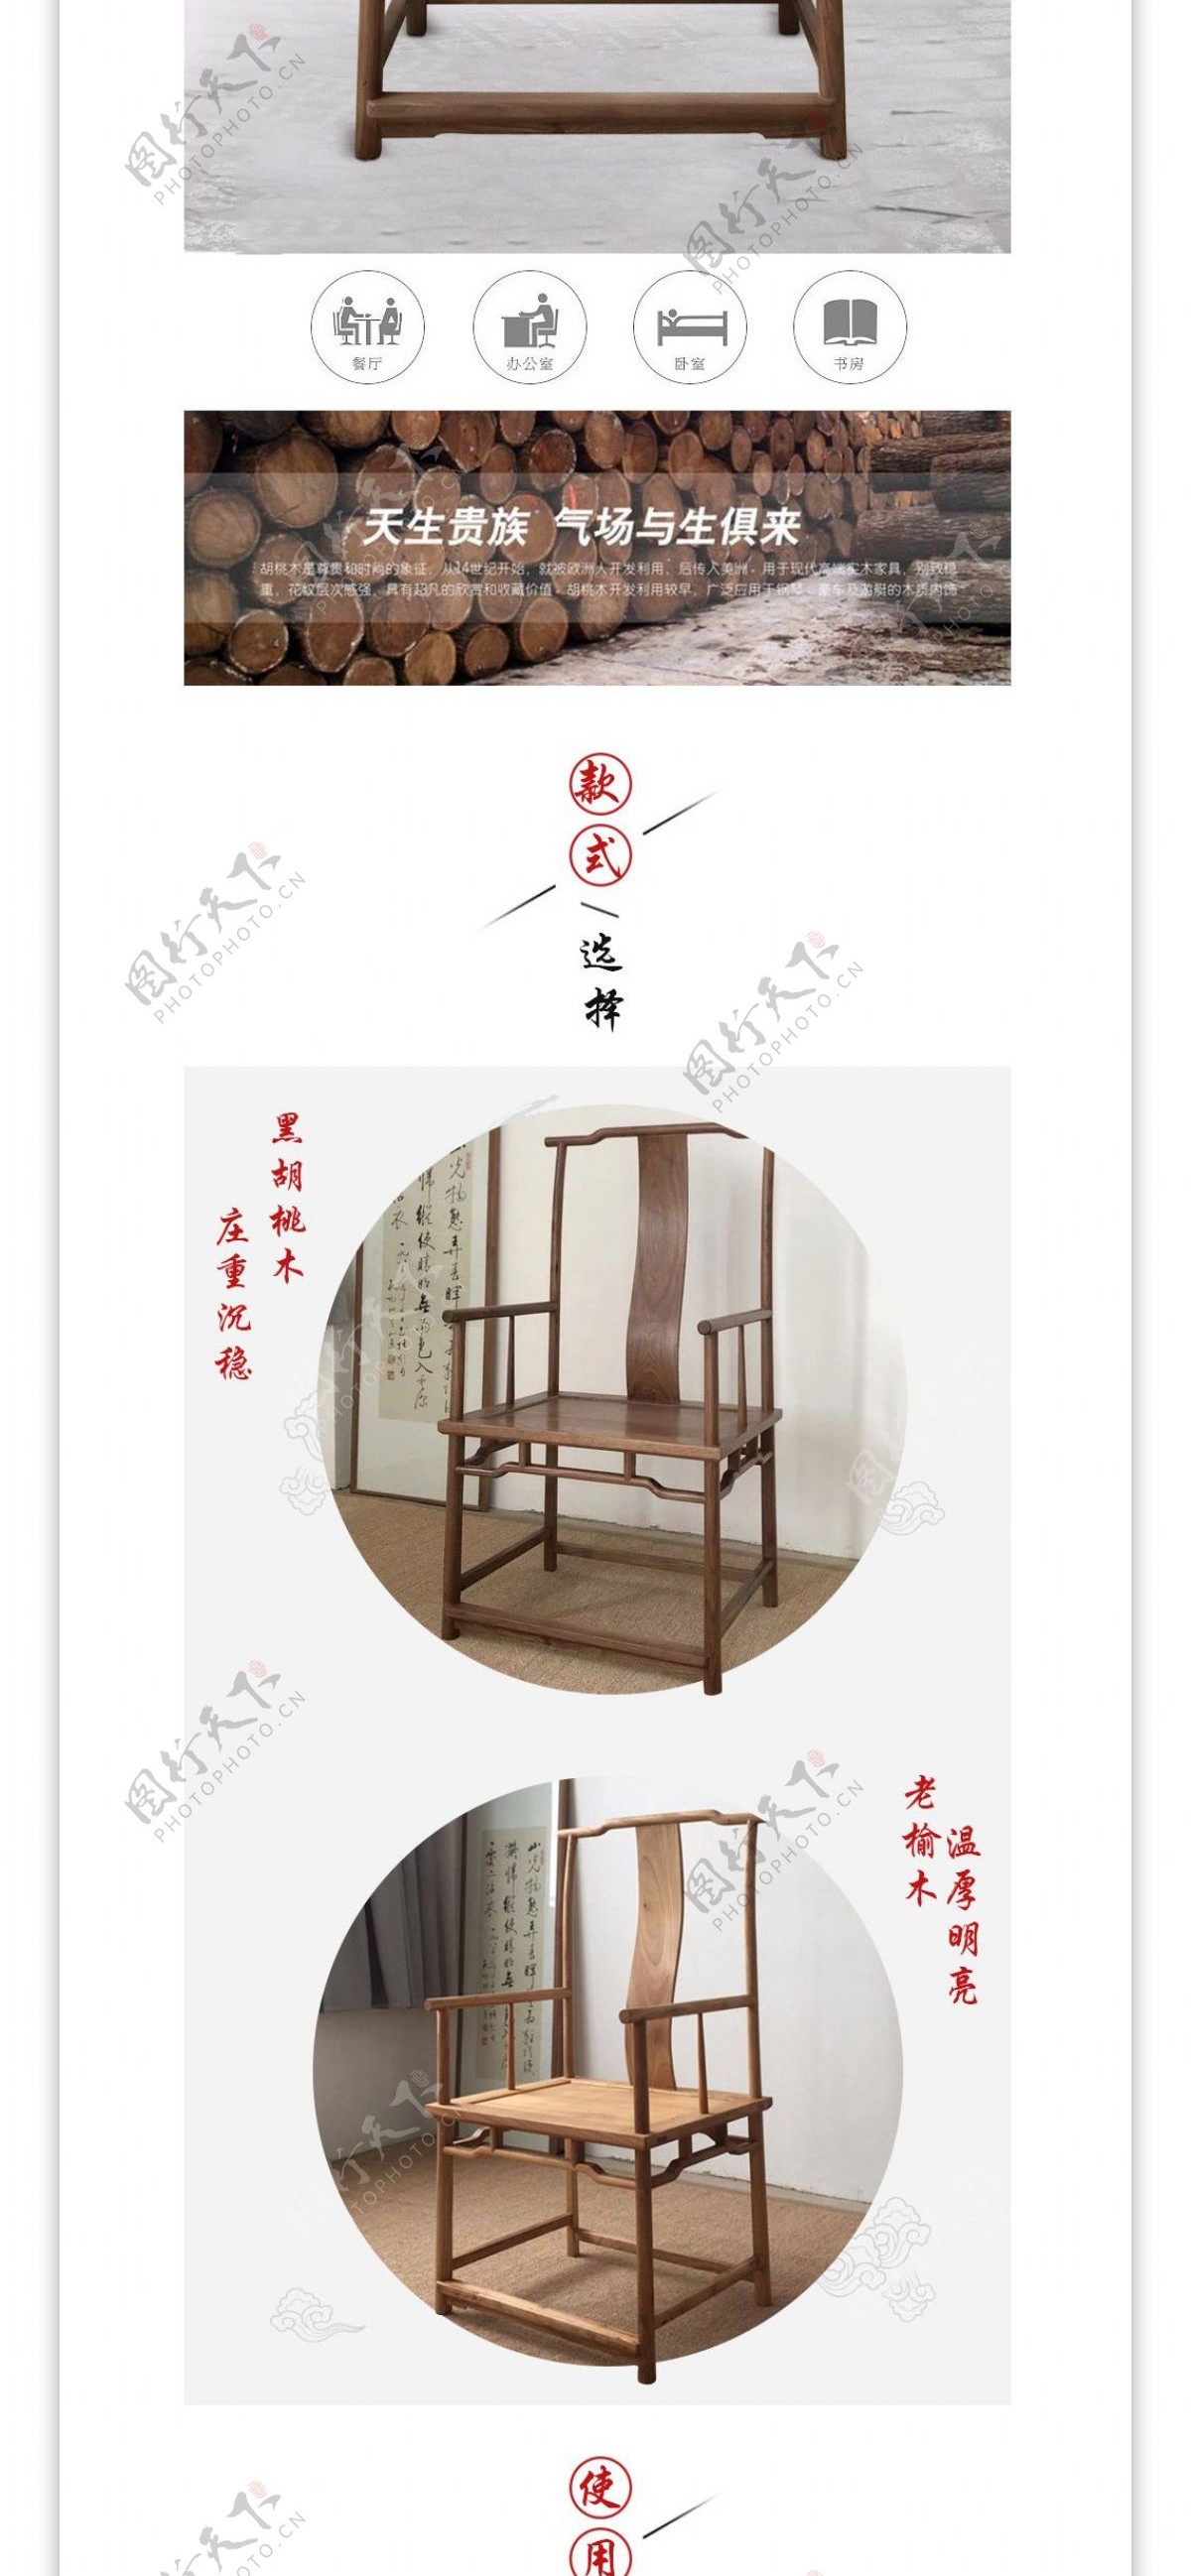 椅子详情页传统木艺简约中国风日用家居家具